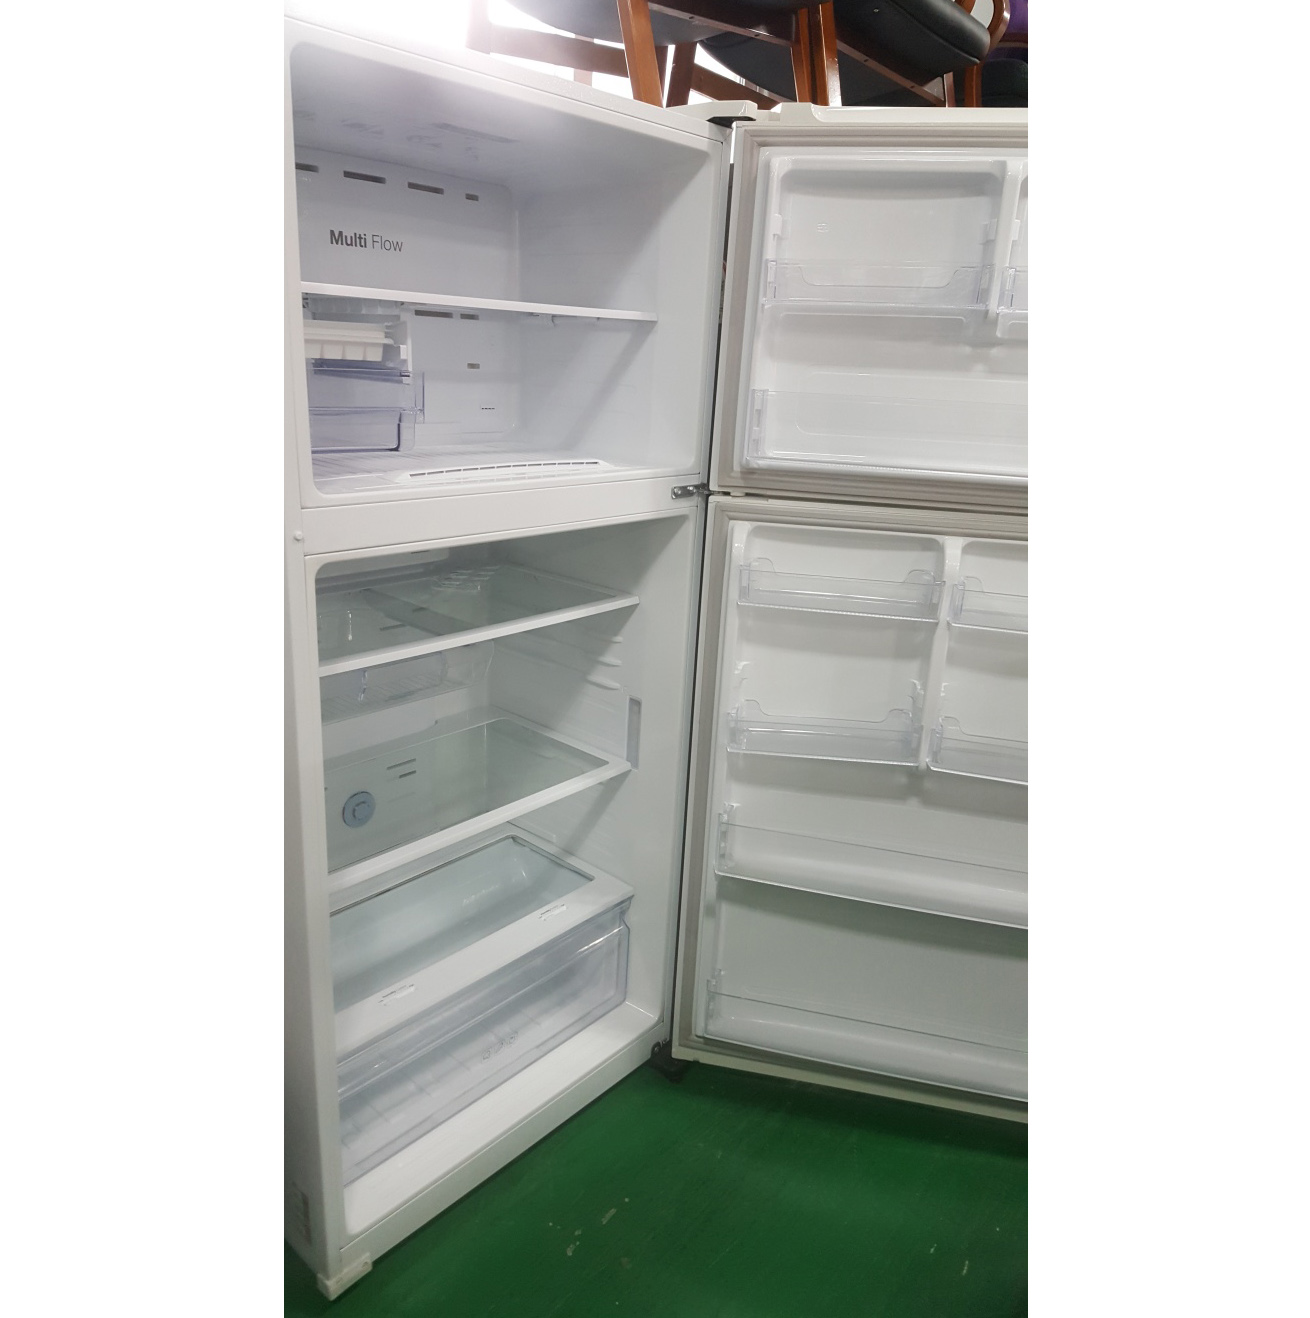 냉장고 580L